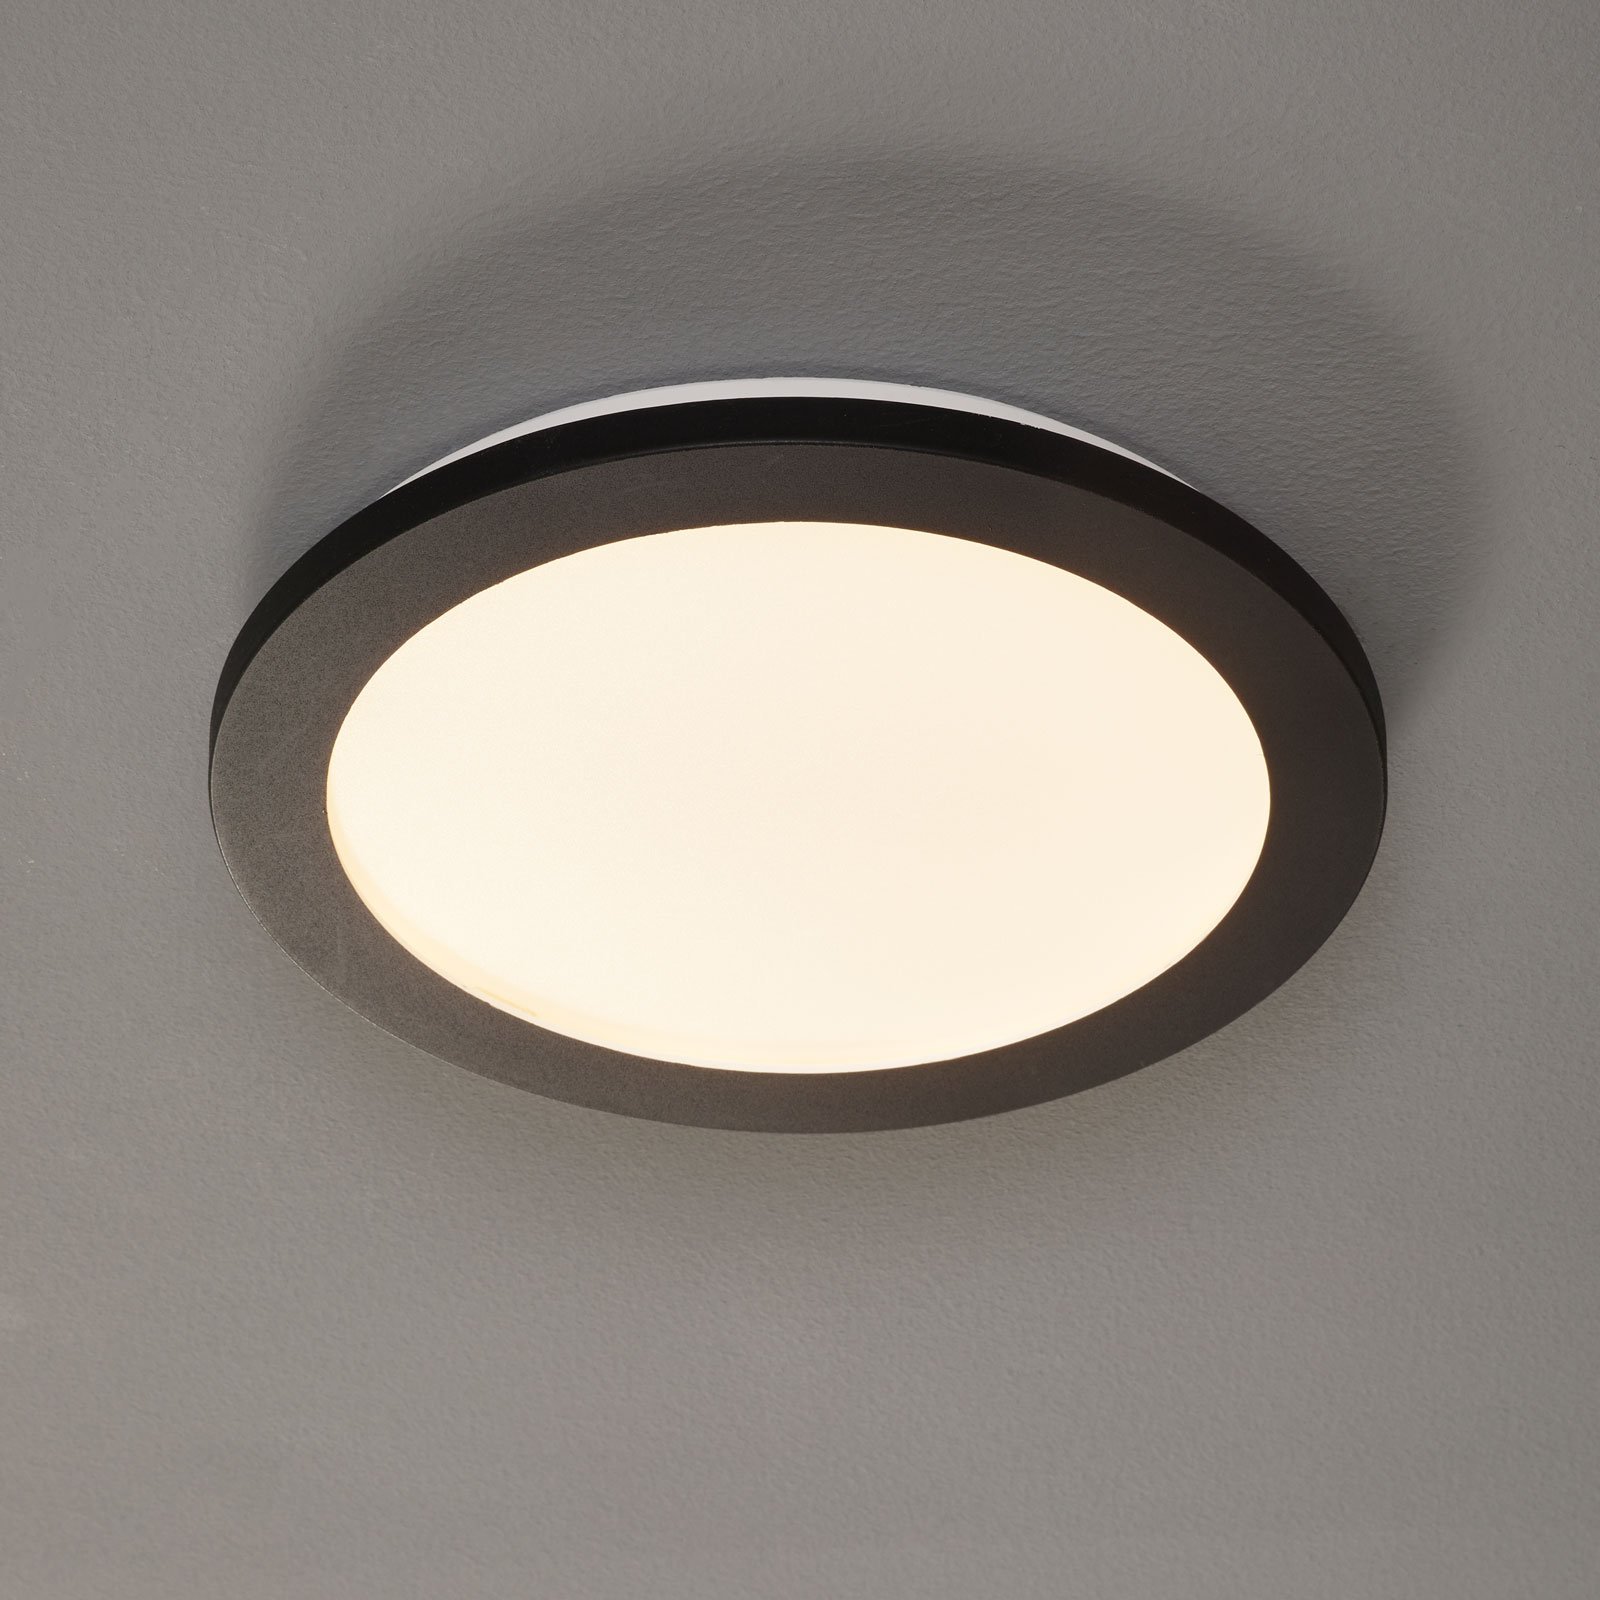 Φωτιστικό οροφής Camillus LED, στρογγυλό, Ø 26 cm